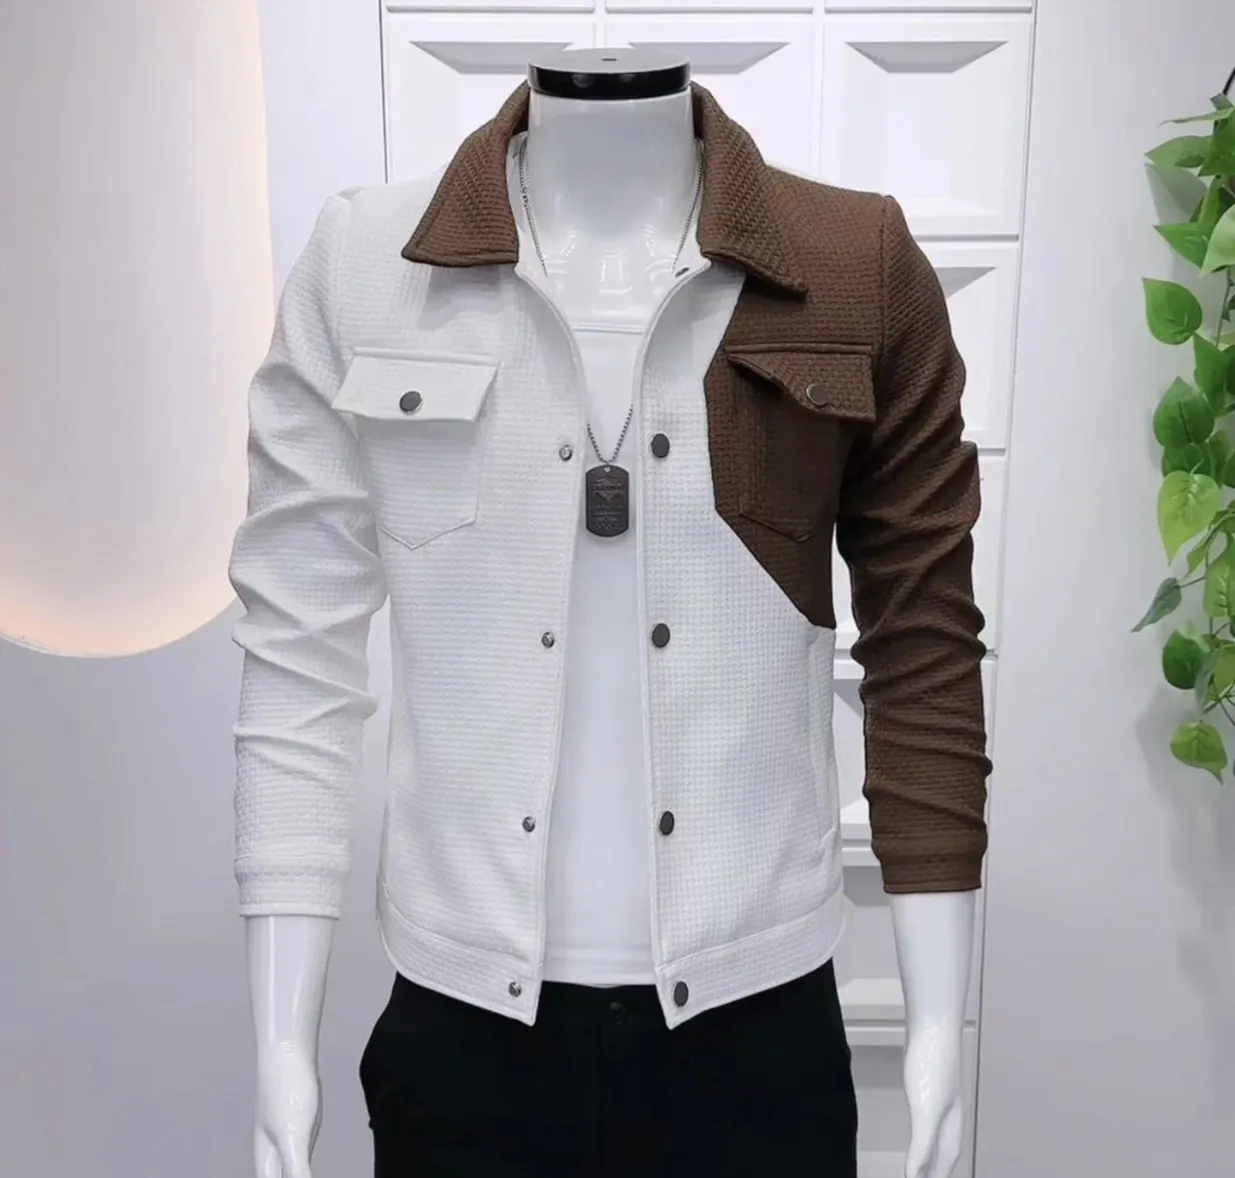 Autumn high quality thick two-tone stitching custom Overshirt fashion style fleece waffle jacket